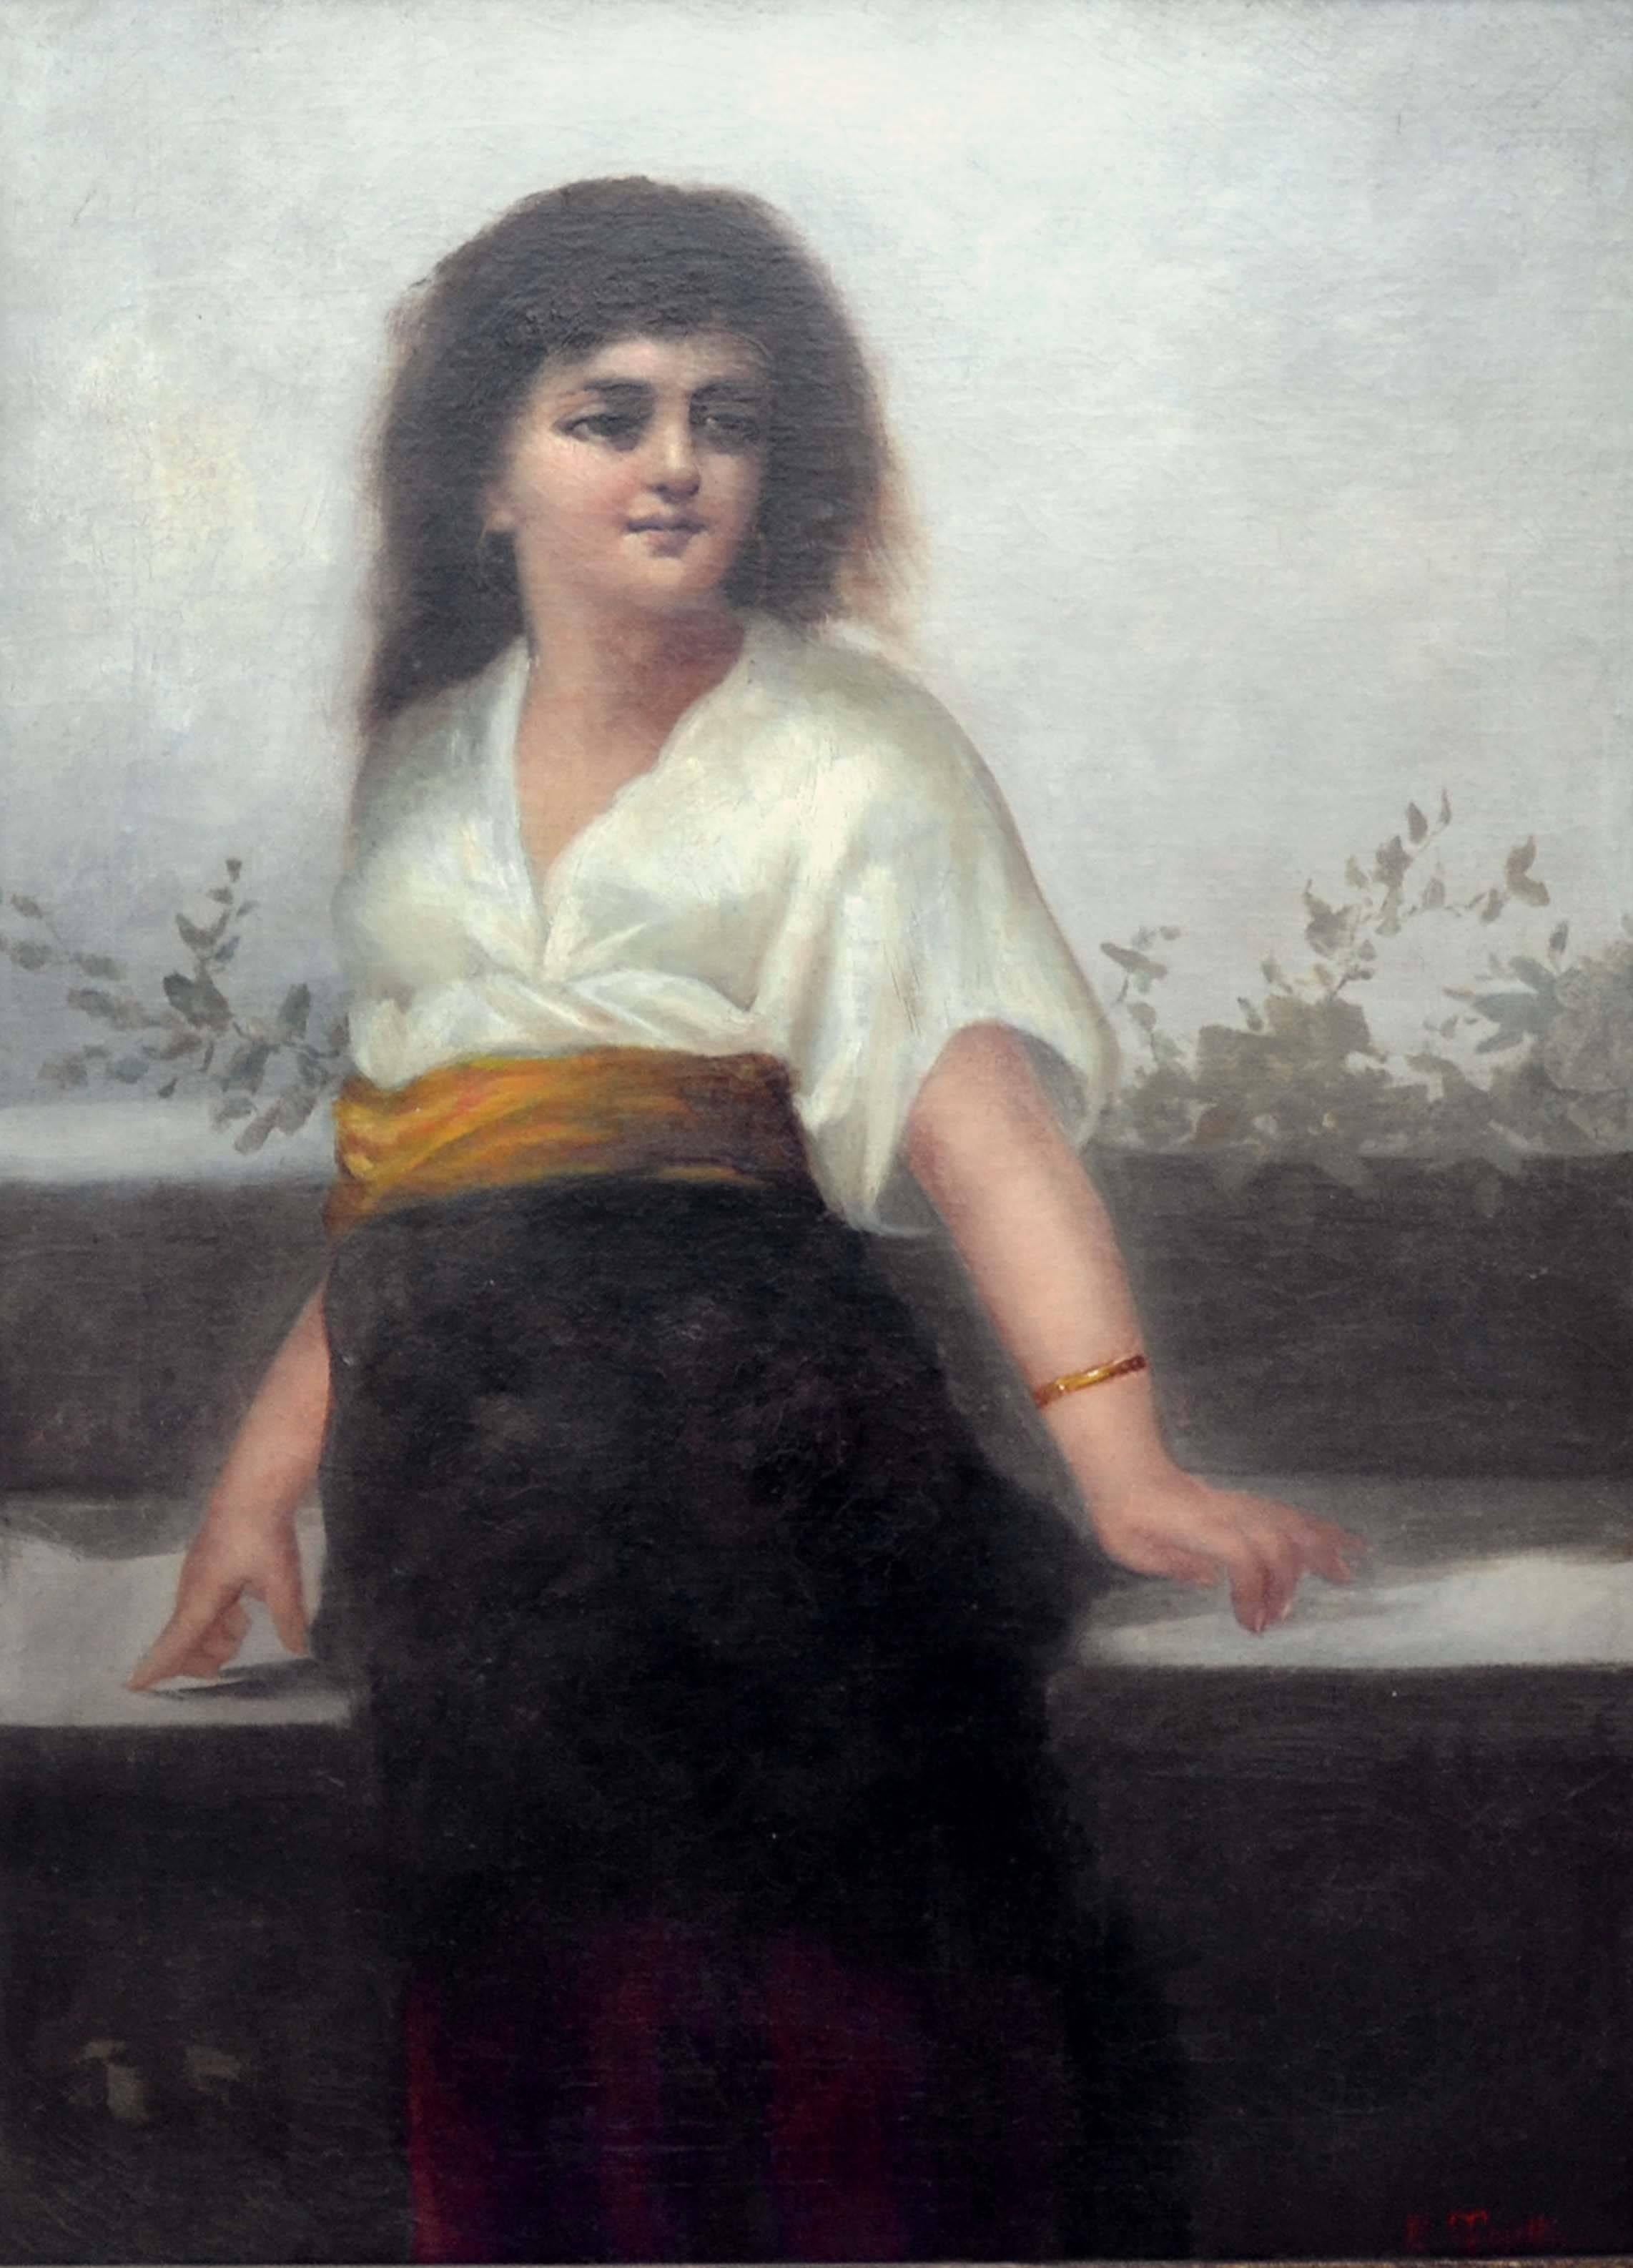 Mädchen mit goldener Schärpe, großformatige figurative weibliche Figuration, spätes 19. Jahrhundert – Painting von Eduardo Tojetti